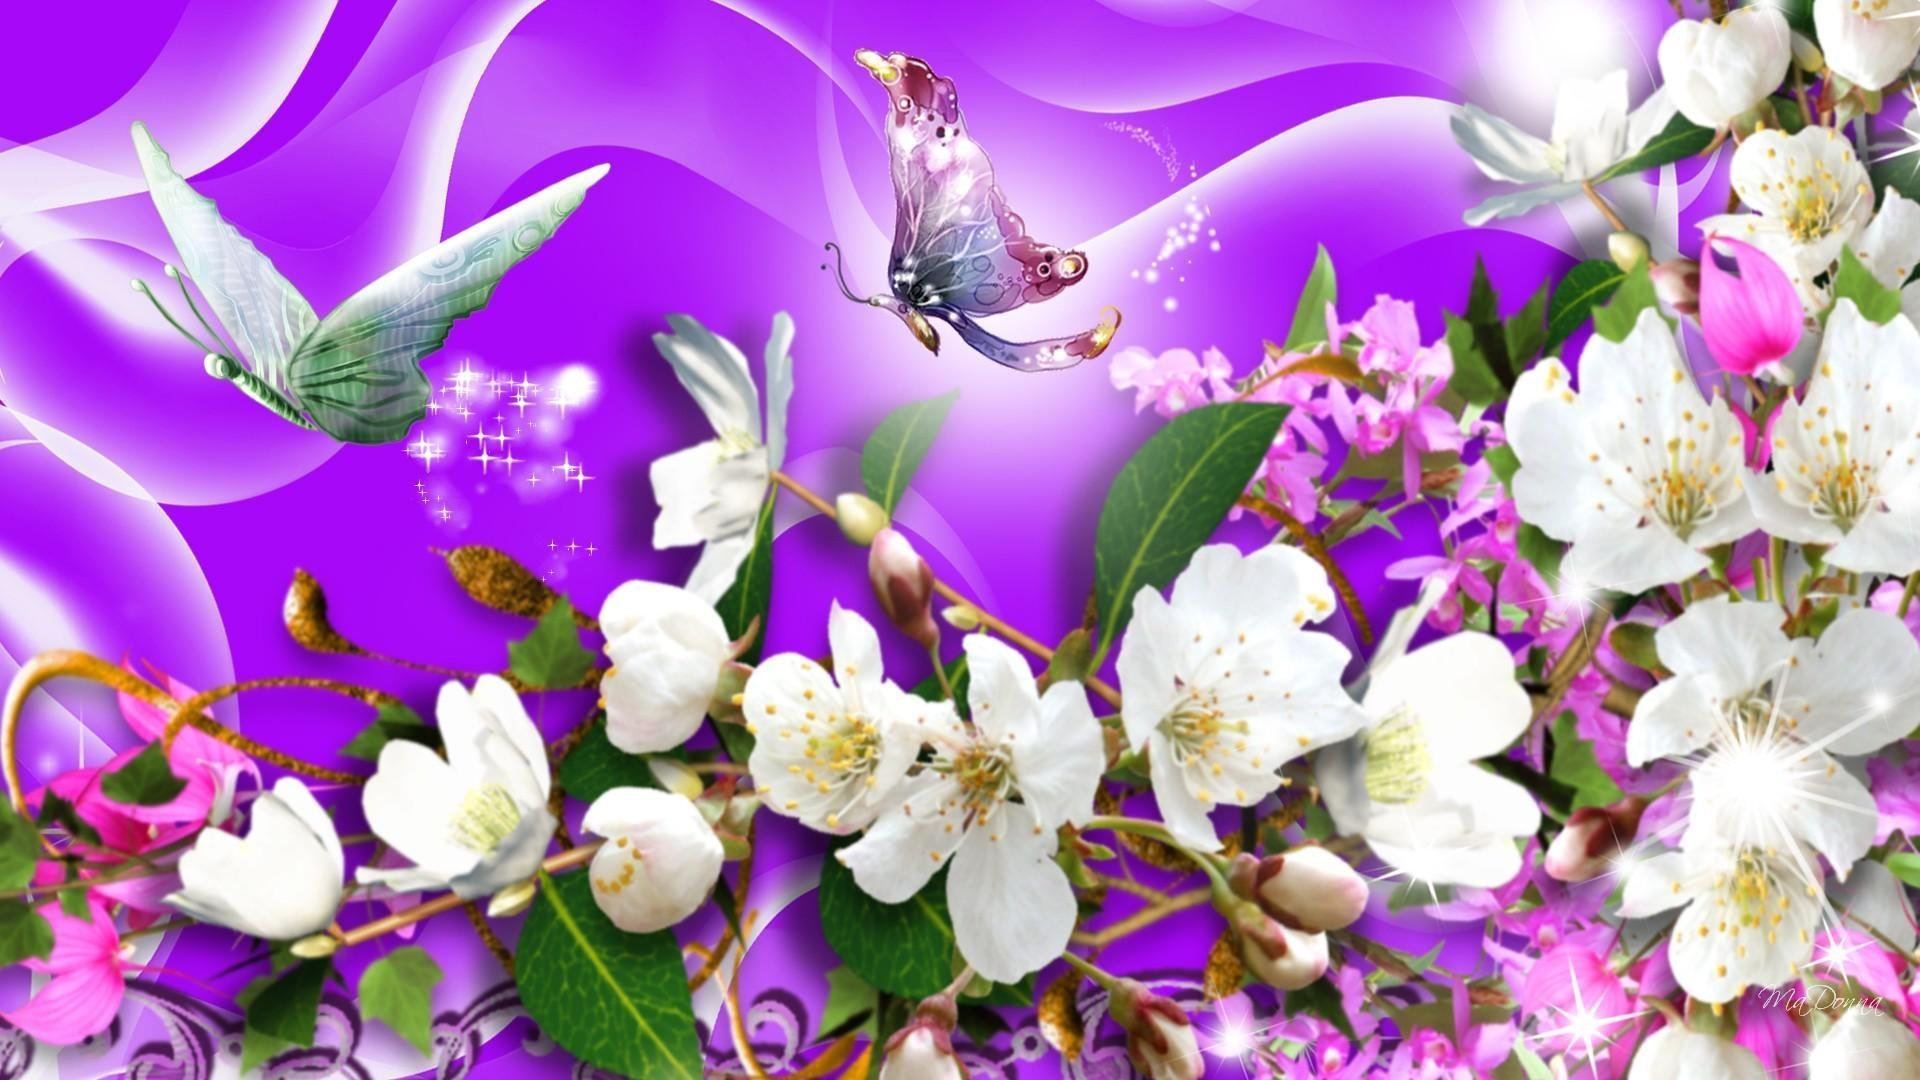 Обложка на экран телефона. Бабочка на цветке. Весенние цветы. Бабочки цветочки картинки. Красивые весенние цветы и бабочки.